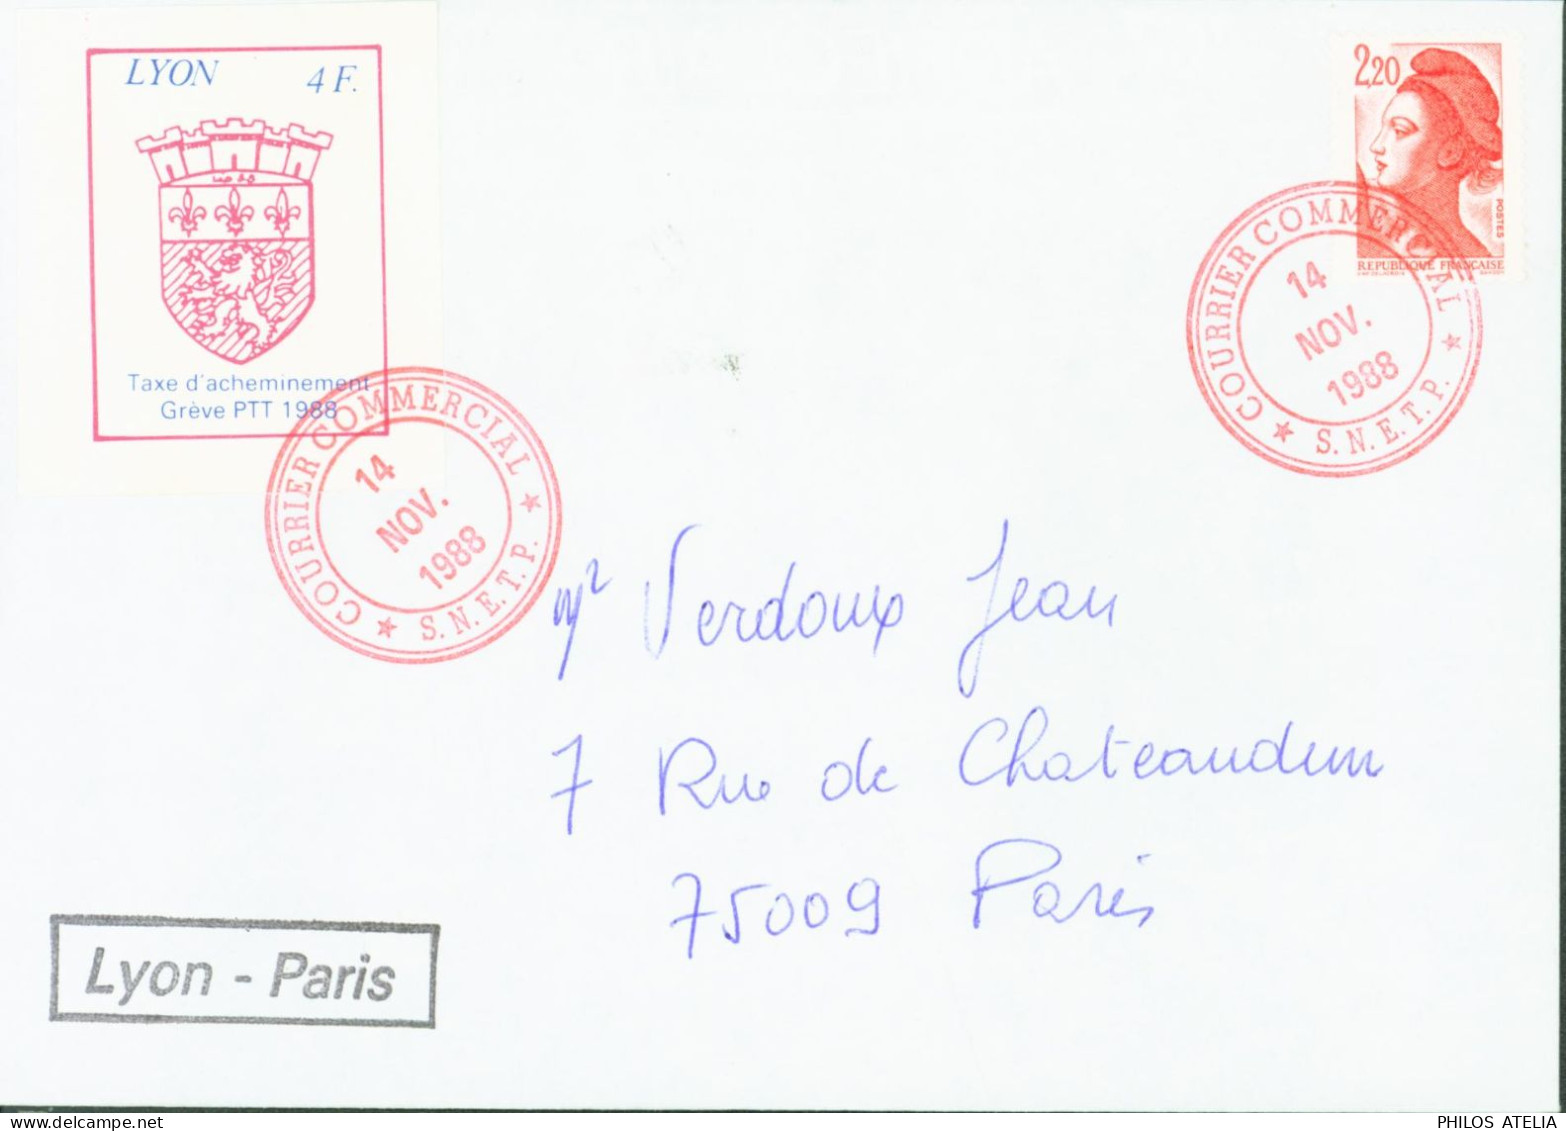 Timbre Lyon 4F Taxe D'acheminement Grève PTT 1988 Cachet Courrier Commercial 14 NO 1988 SNETP + YT N°2376 - Documents